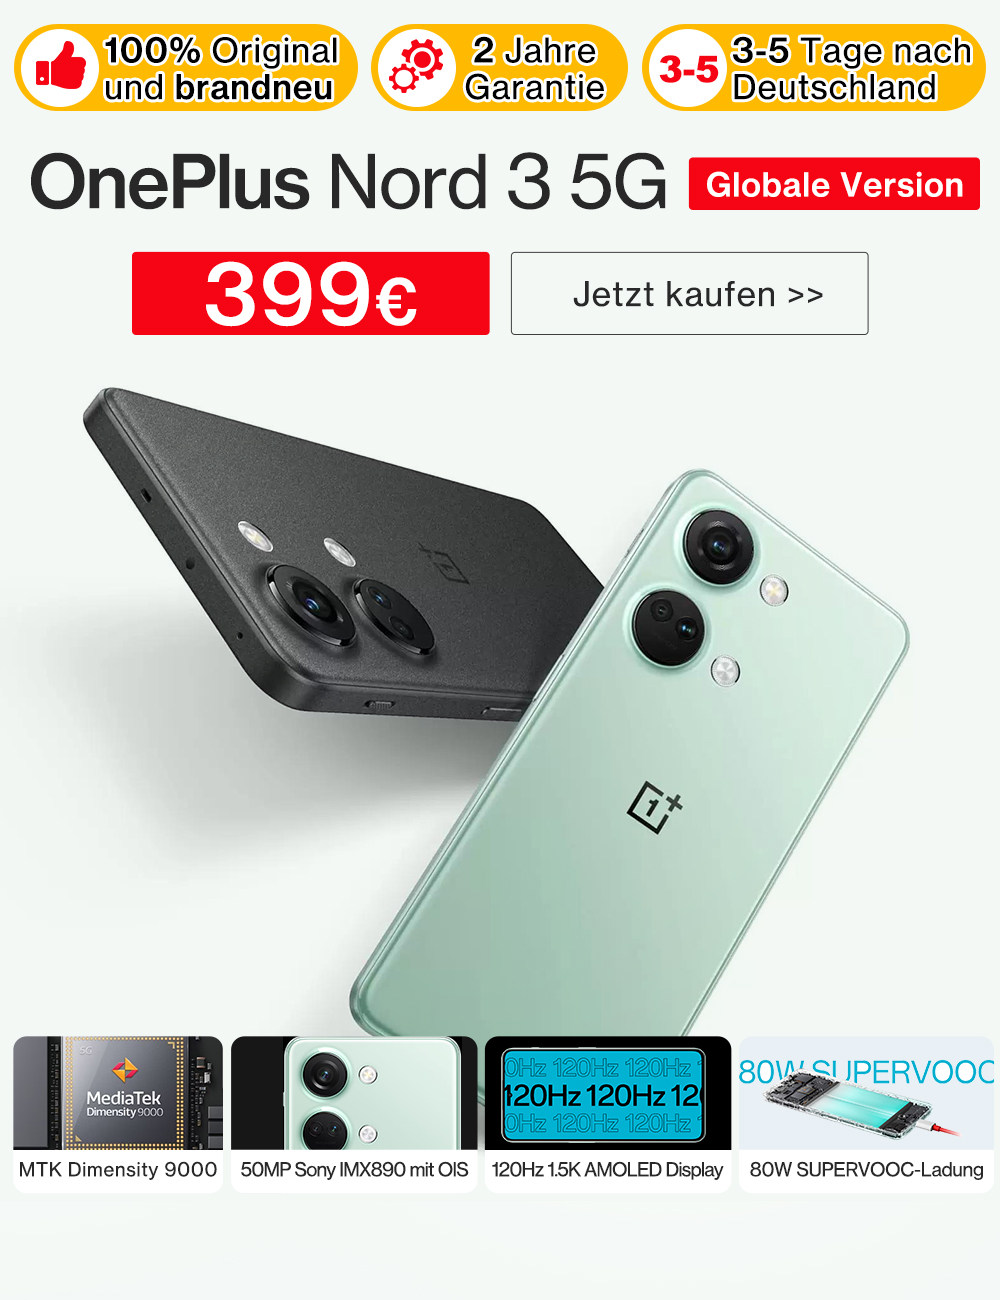 OnePlus | Xiaomi | Lenovo | Elektronische Gadgets in Deutschland einkaufen  | www.azahoo.com